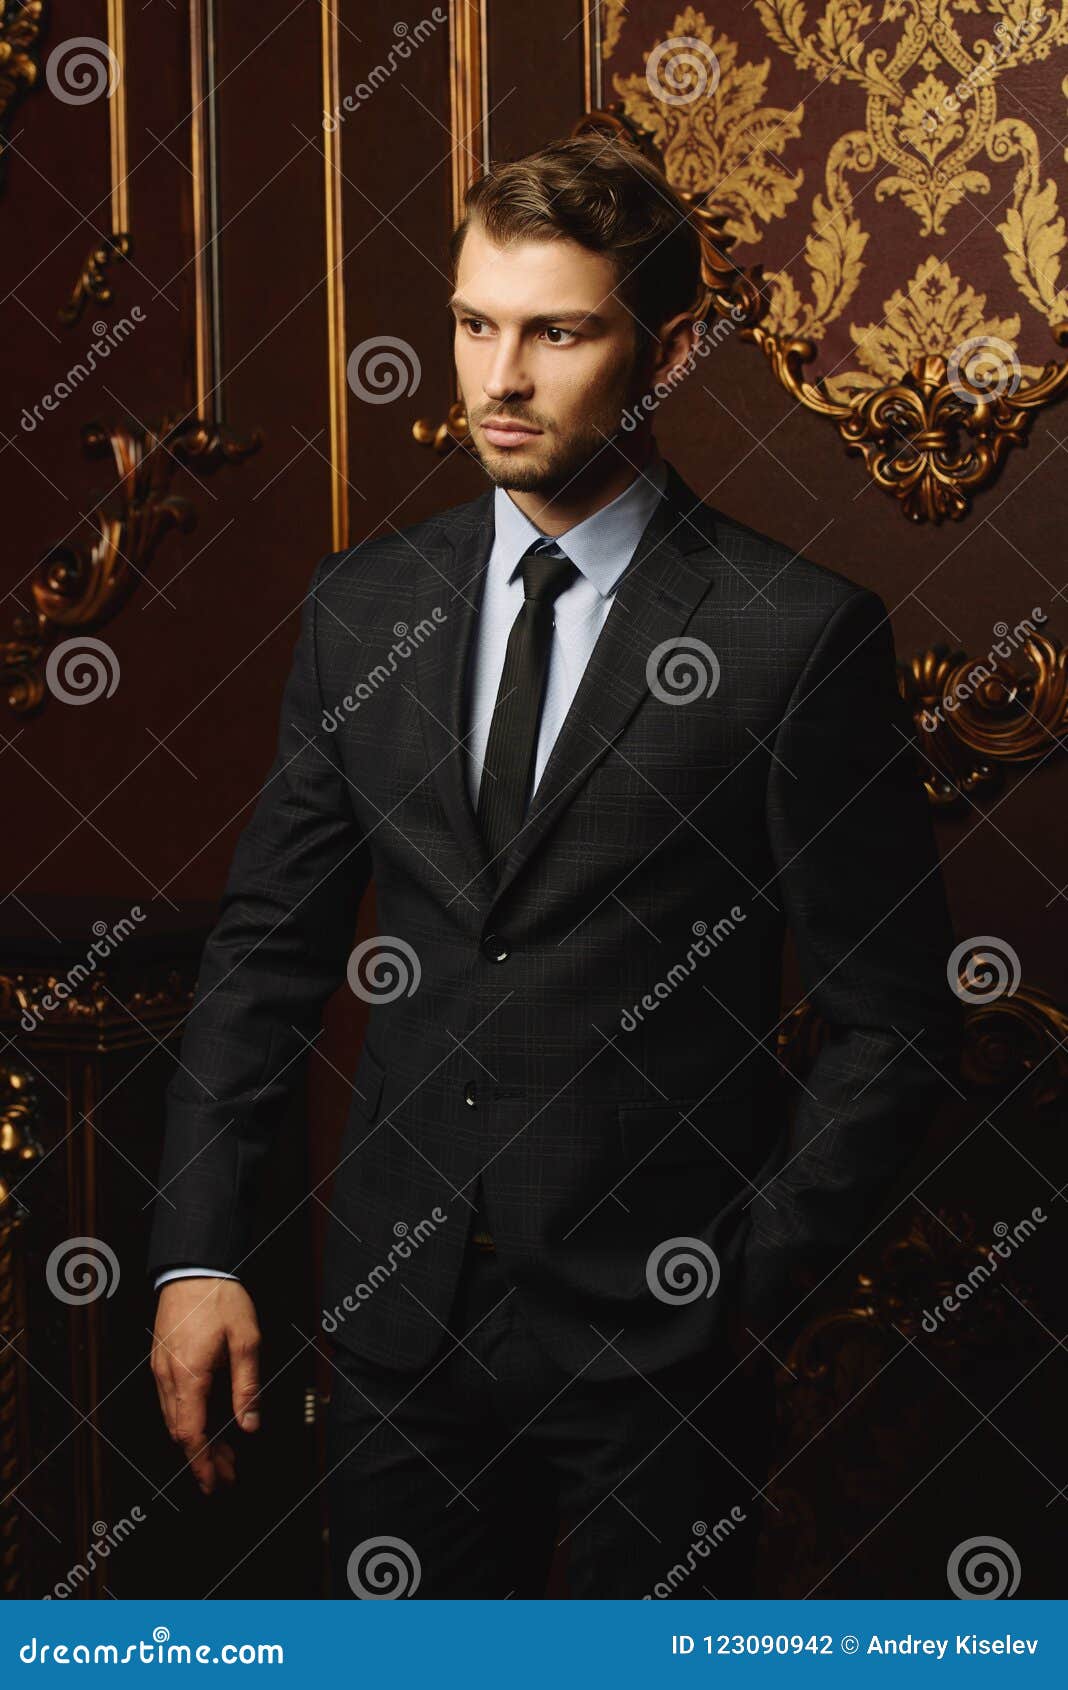 imposing man in suit